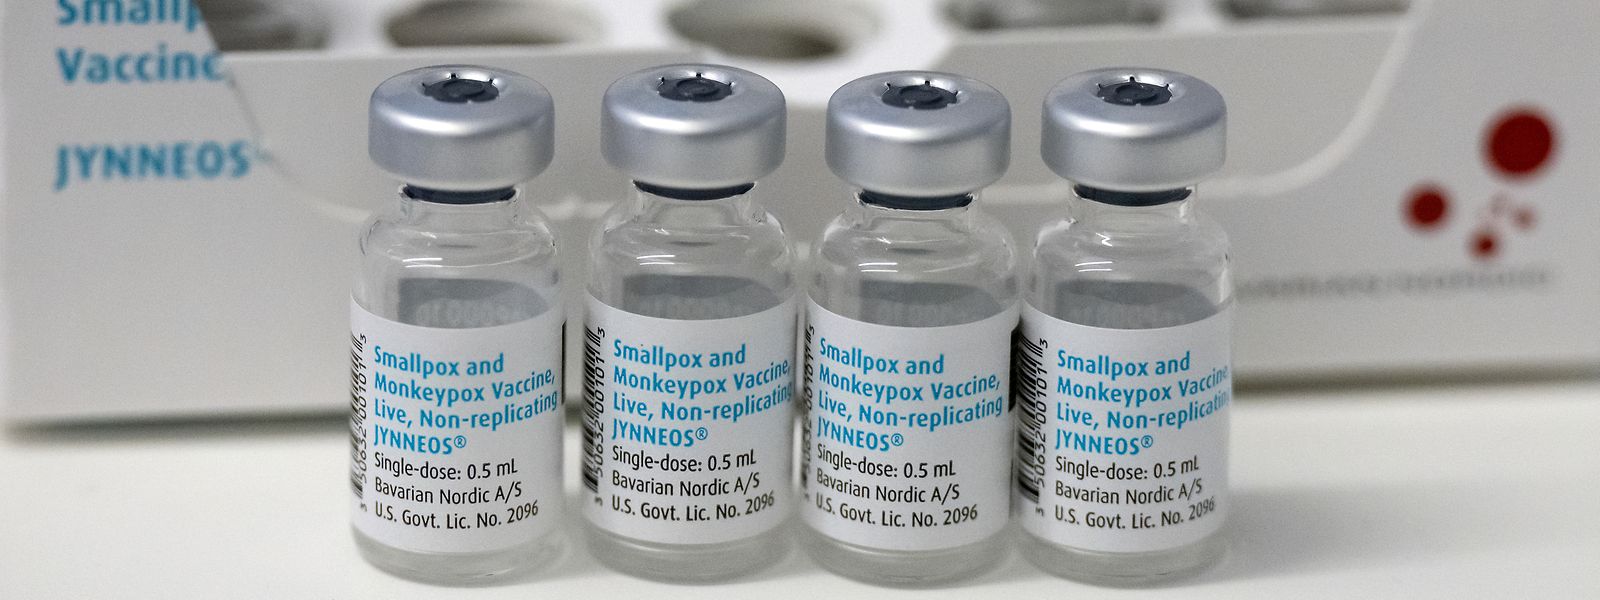 L'OMS recommande de maintenir les mesures de surveillance et de vaccination ciblée pour lutter contre la variole du singe.